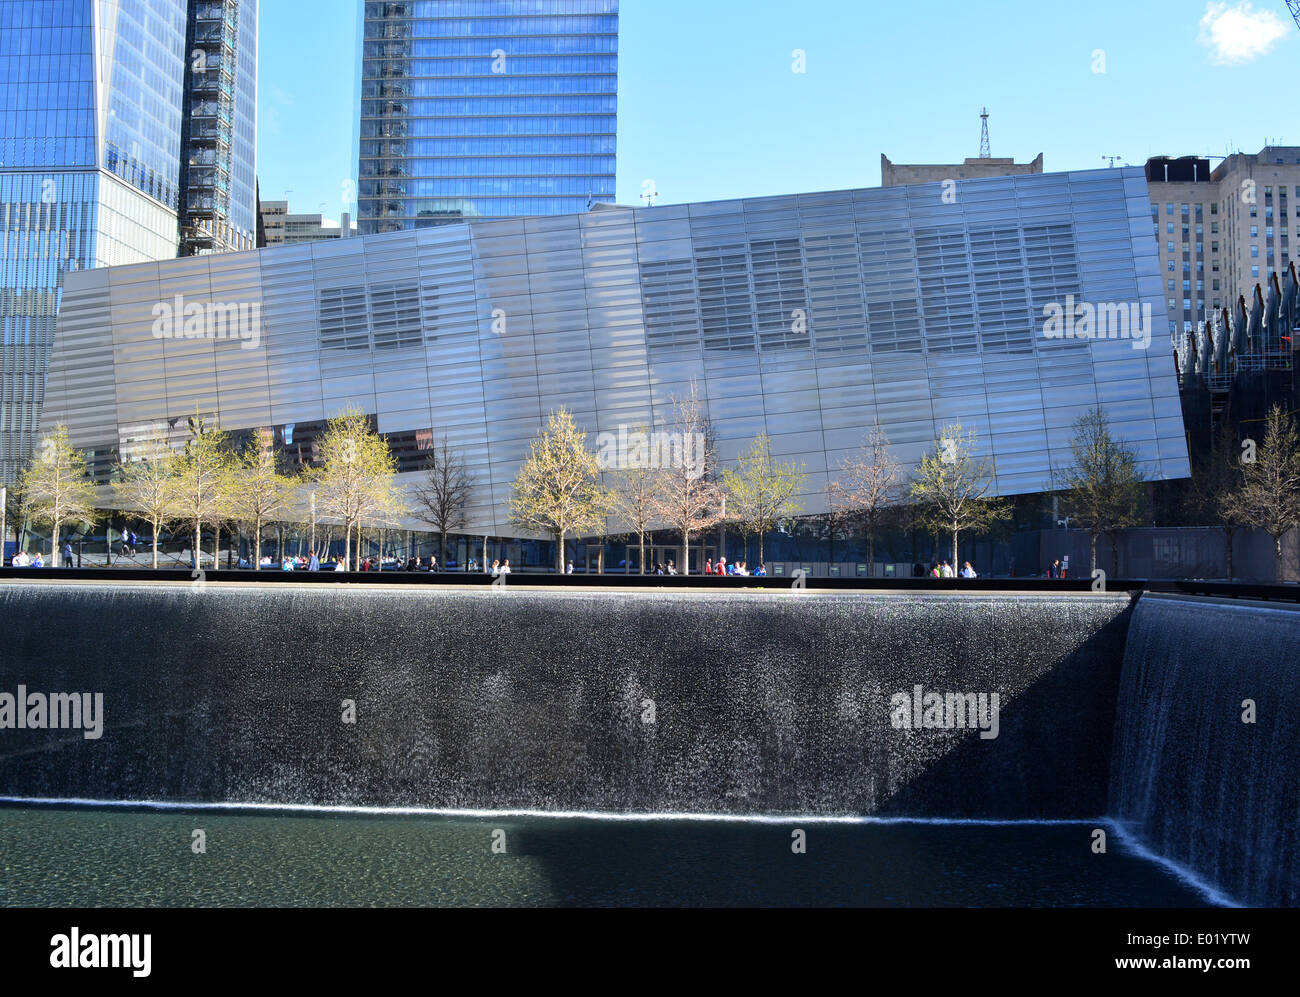 Musée national le 11 septembre 2001 au 11 septembre 2001 Mémorial sur Ground Zero à Manhattan. Banque D'Images